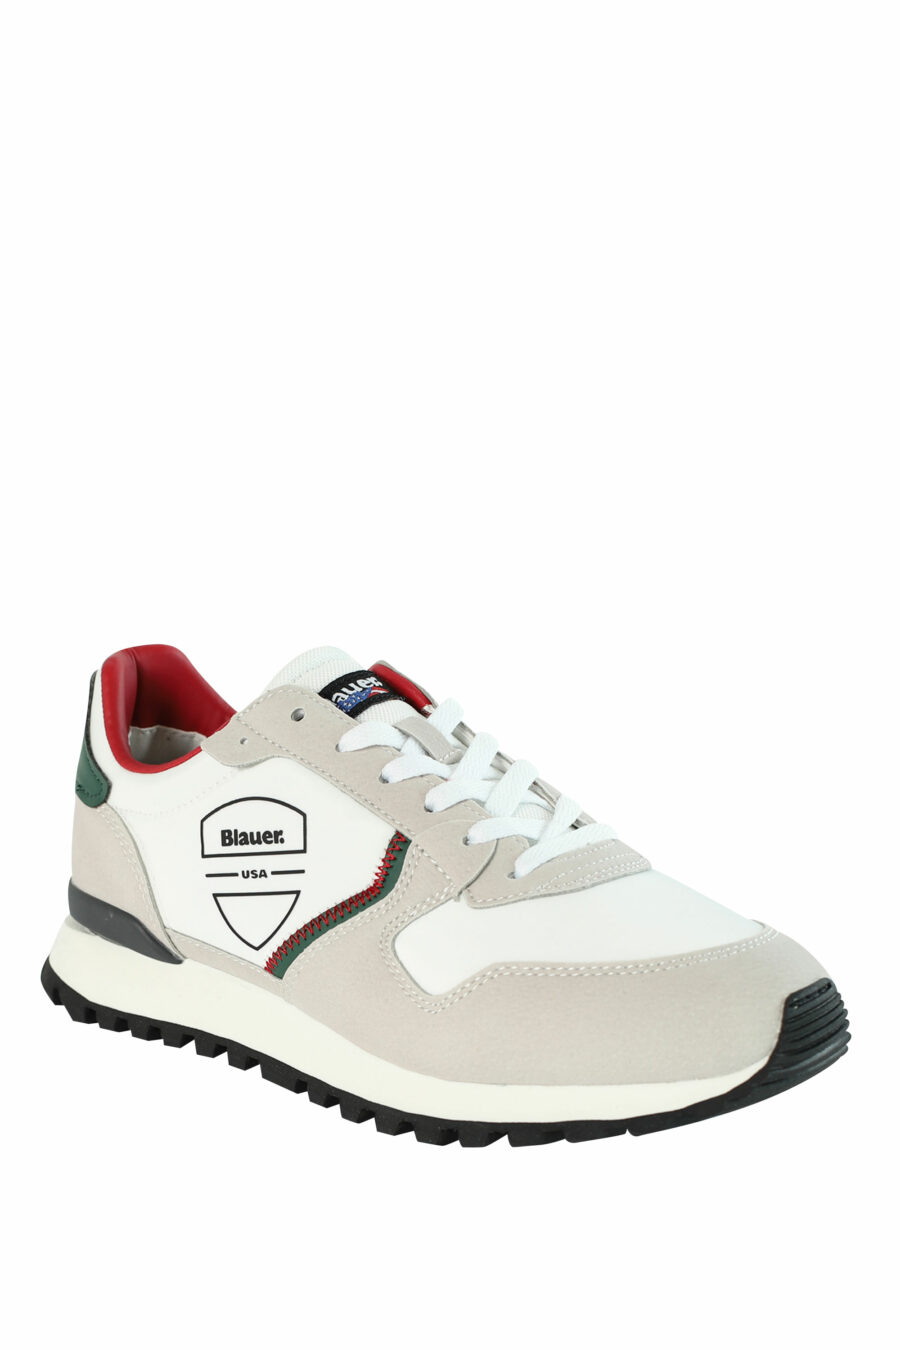 Zapatillas "DIXON" blancas mix con detalles rojos y verdes - 8058156493902 2